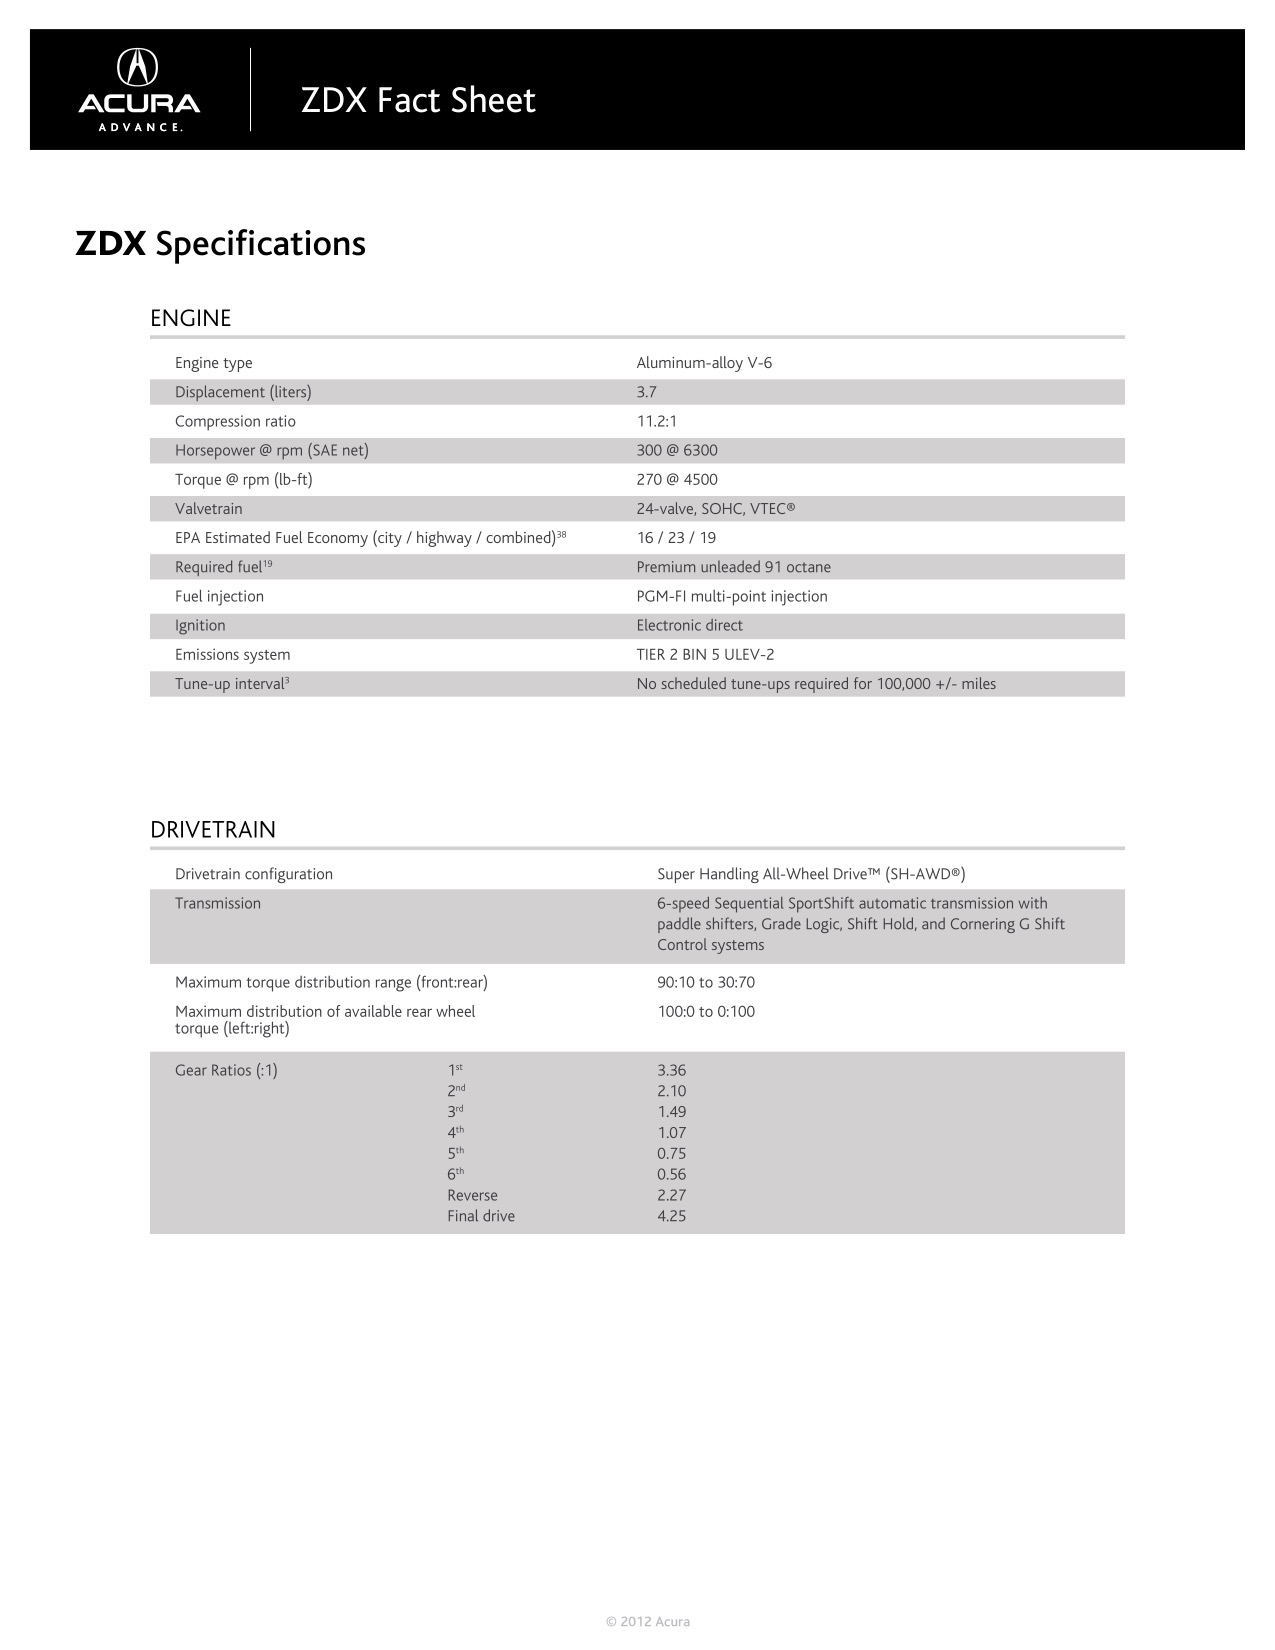 2012 Acura ZDX Brochure Page 20